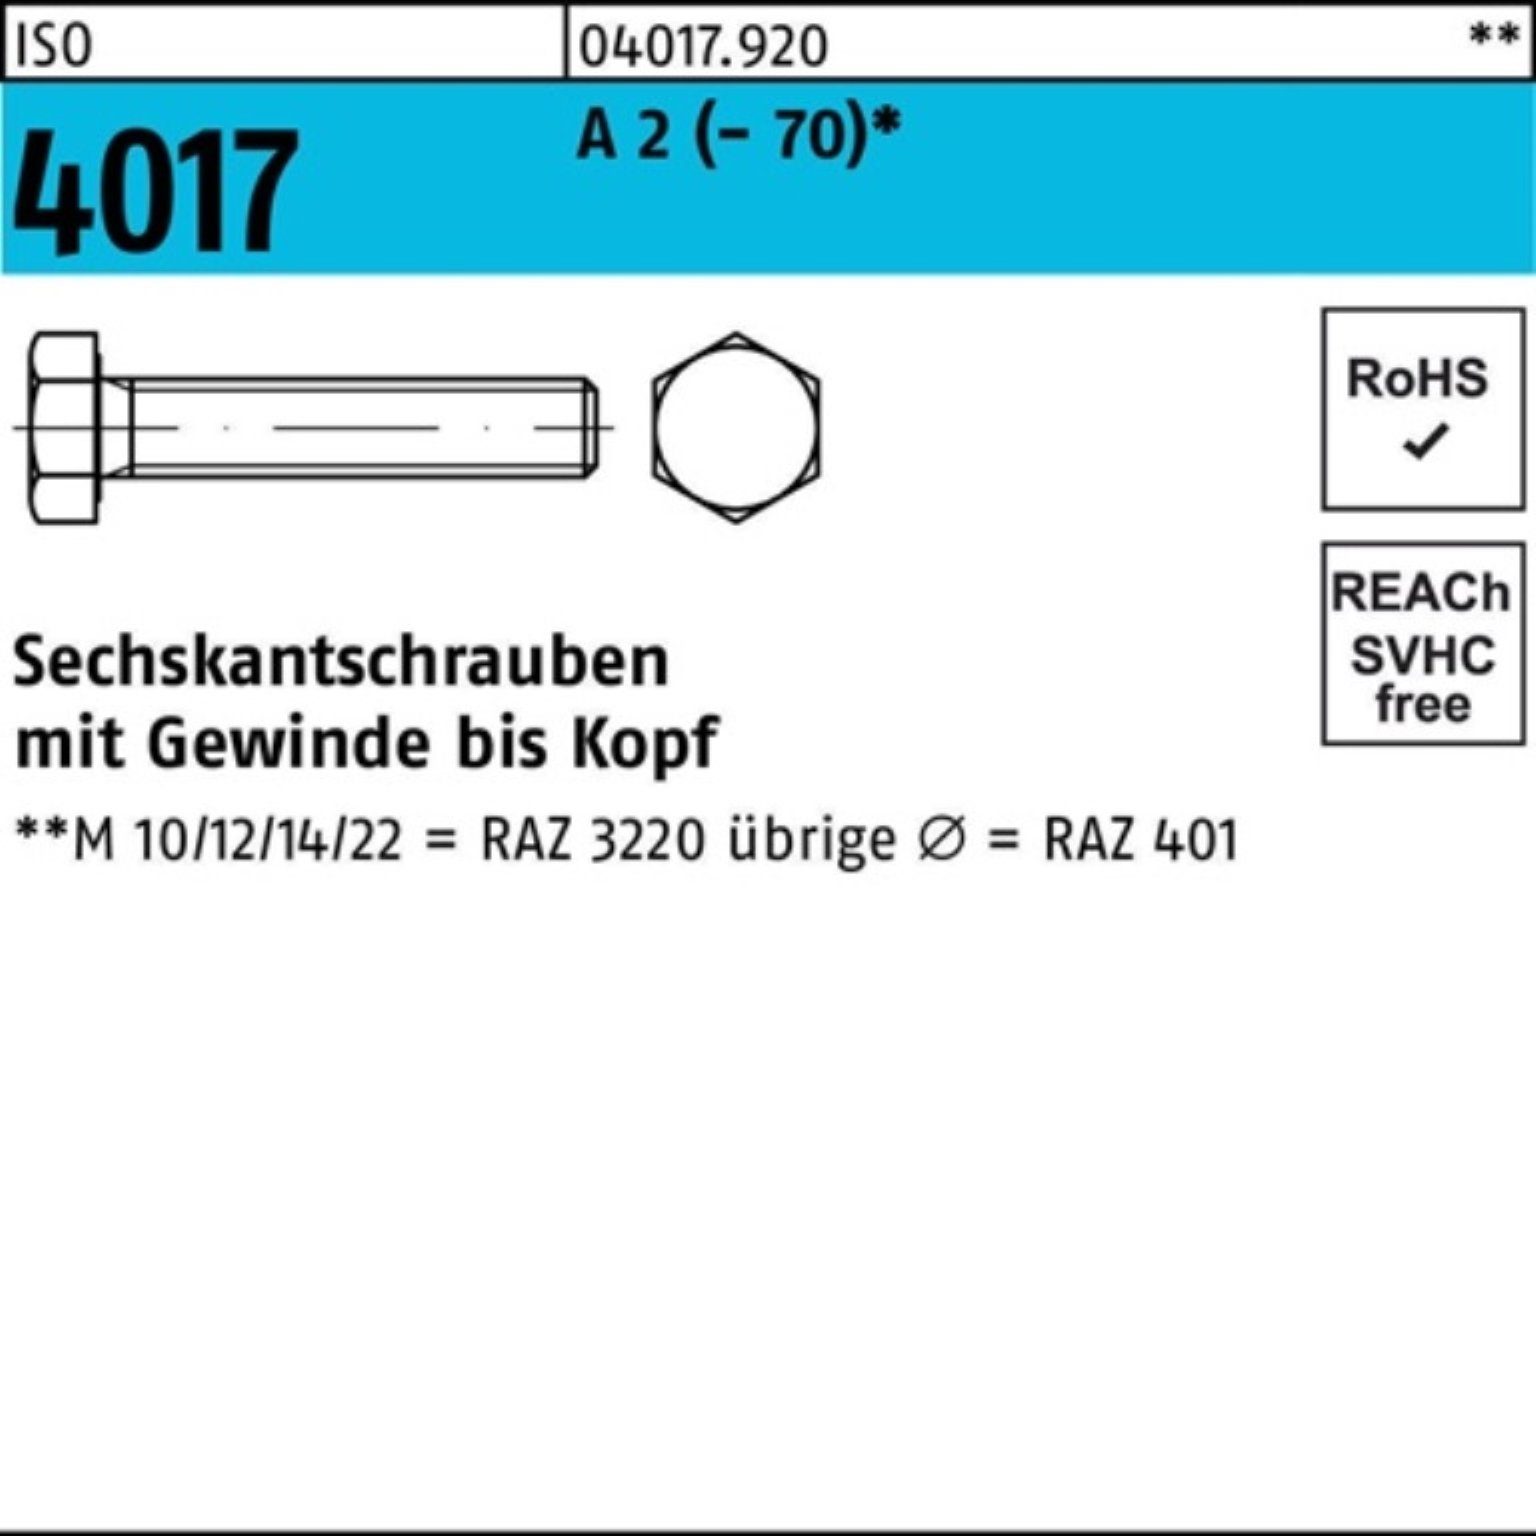 Bufab Sechskantschraube 200er Pack Sechskantschraube ISO 4017 VG M6x 40 A 2 (70) 200 Stück